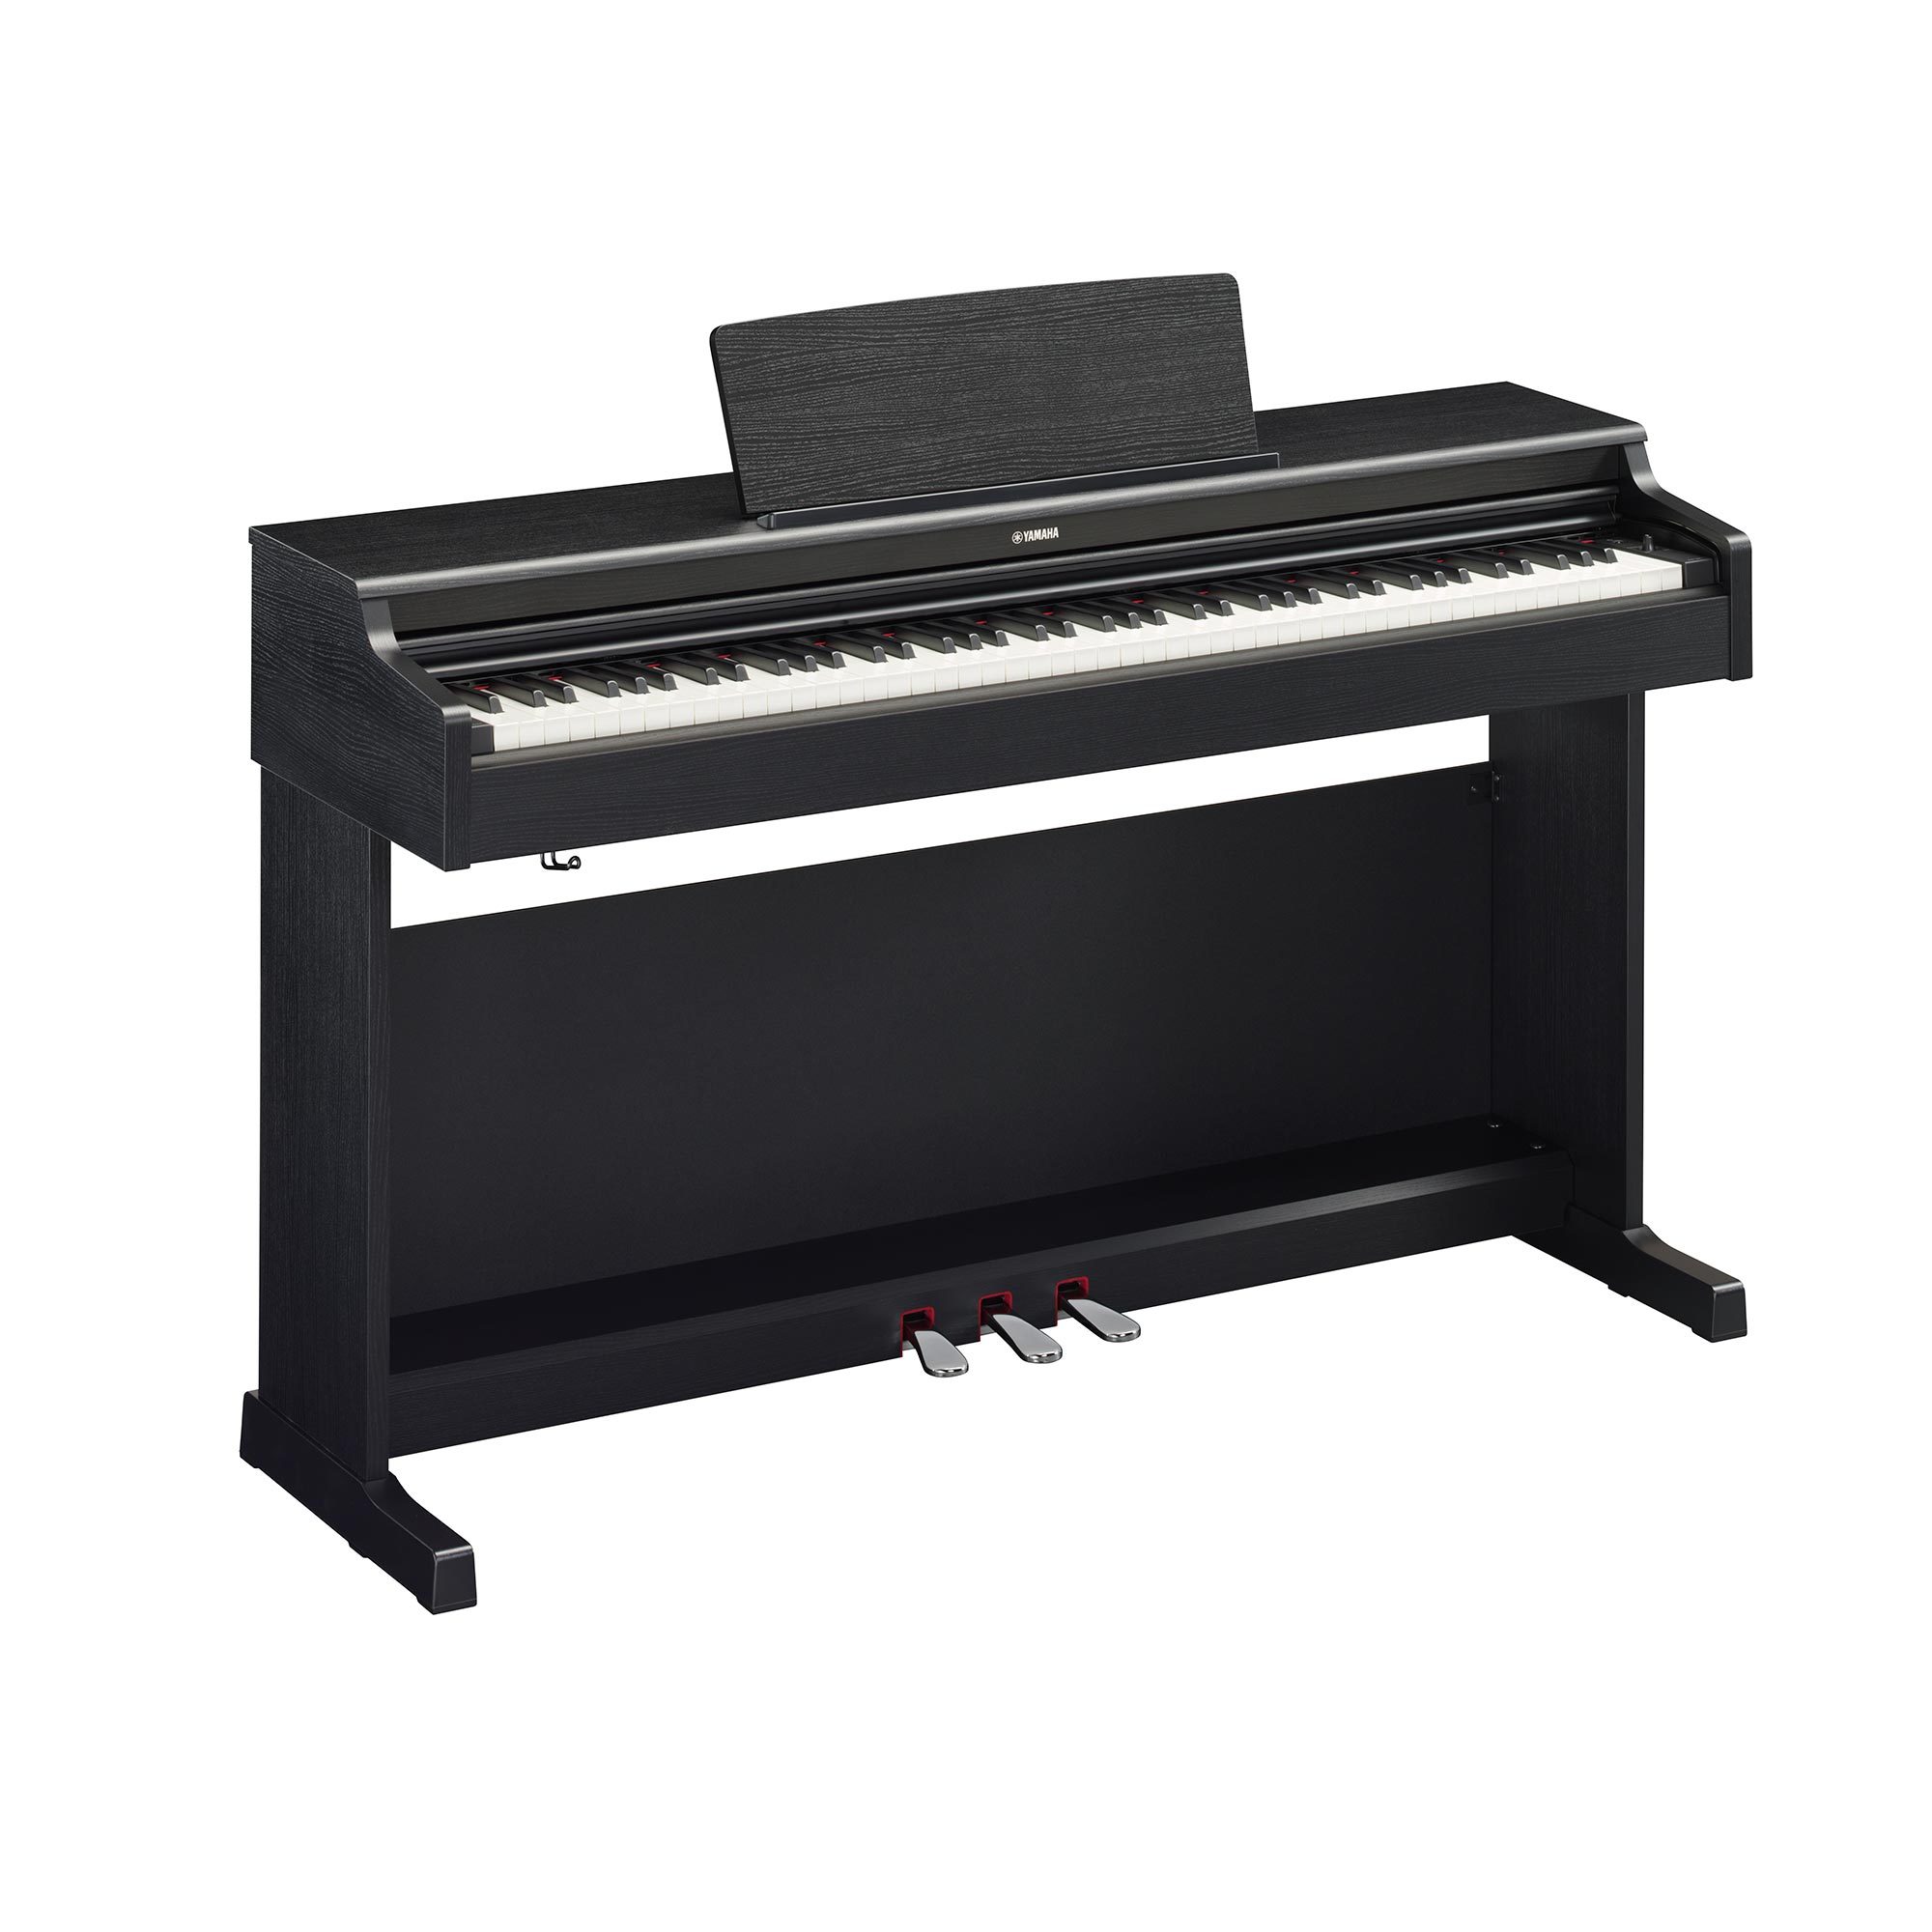 Đàn Piano điện, Digital Piano - Yamaha ARIUS YDP-165 (YDP165) - Black, 88 phím GH3 nặng, mặt trên phím làm bằng gỗ mun - Hàng chính hãng